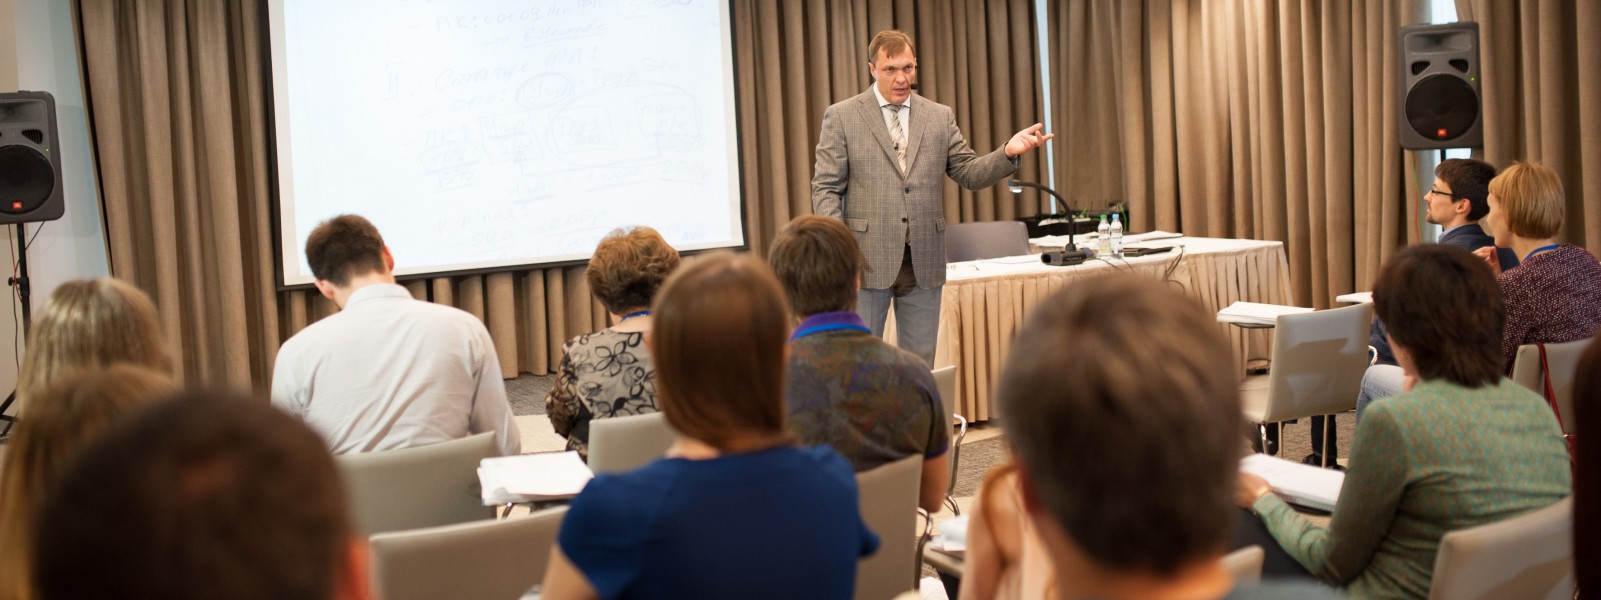 15-16 июня в Москве состоялся очередной семинар Владимира Турова по оптимизации налогообложения